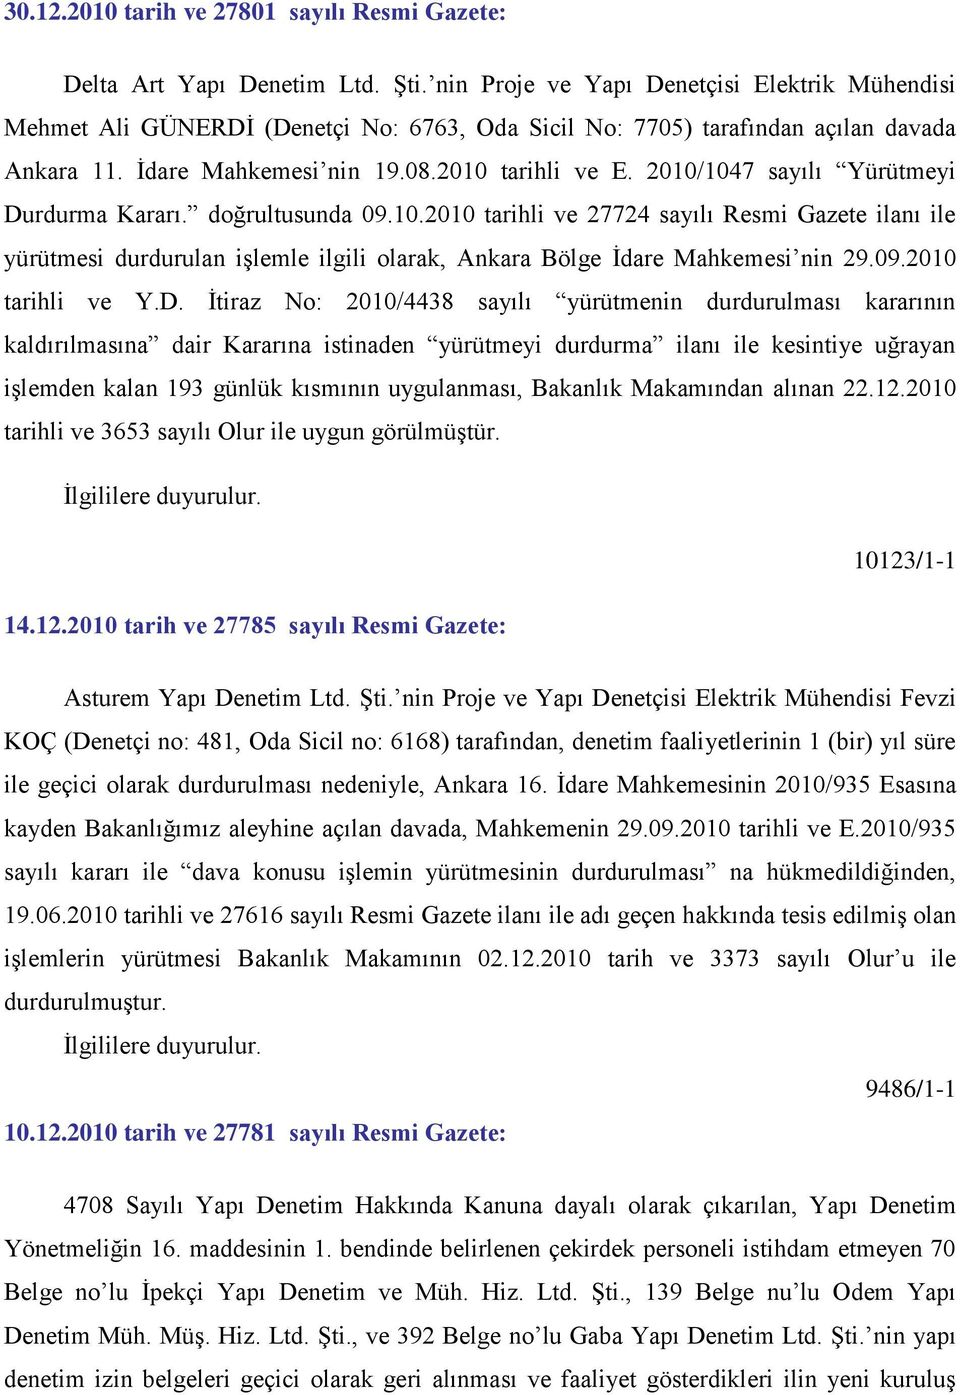 2010/1047 sayılı Yürütmeyi Durdurma Kararı. doğrultusunda 09.10.2010 tarihli ve 27724 sayılı Resmi Gazete ilanı ile yürütmesi durdurulan iģlemle ilgili olarak, Ankara Bölge Ġdare Mahkemesi nin 29.09.2010 tarihli ve Y.